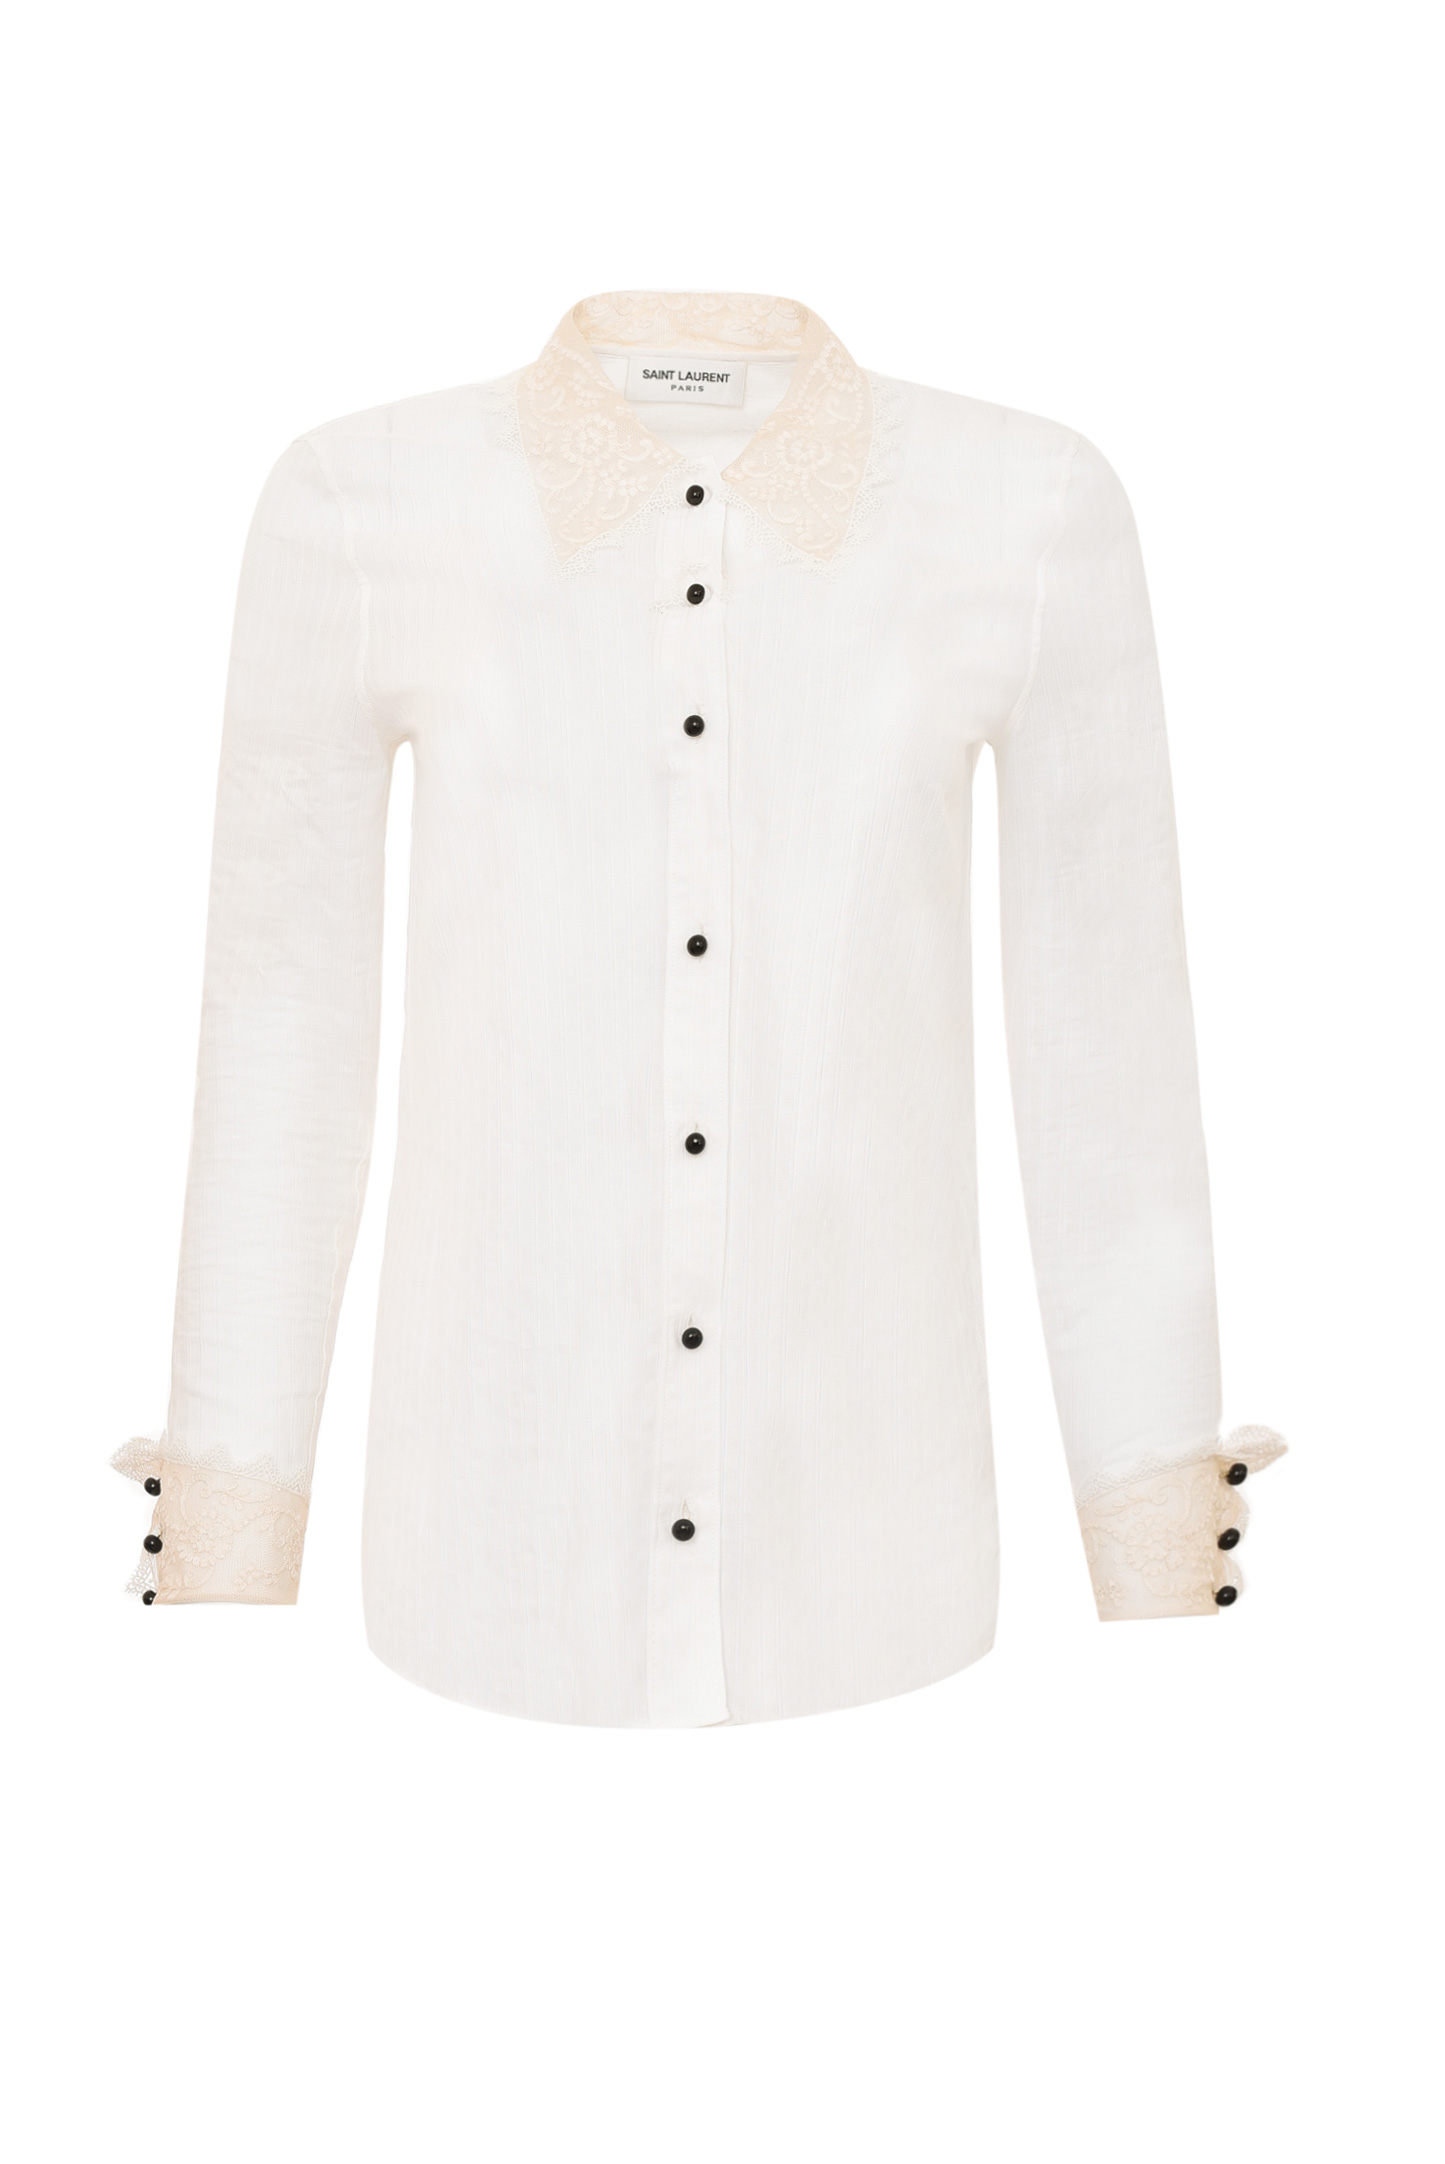 Блуза SAINT LAURENT 661141 Y3D31, цвет: Белый, Женский